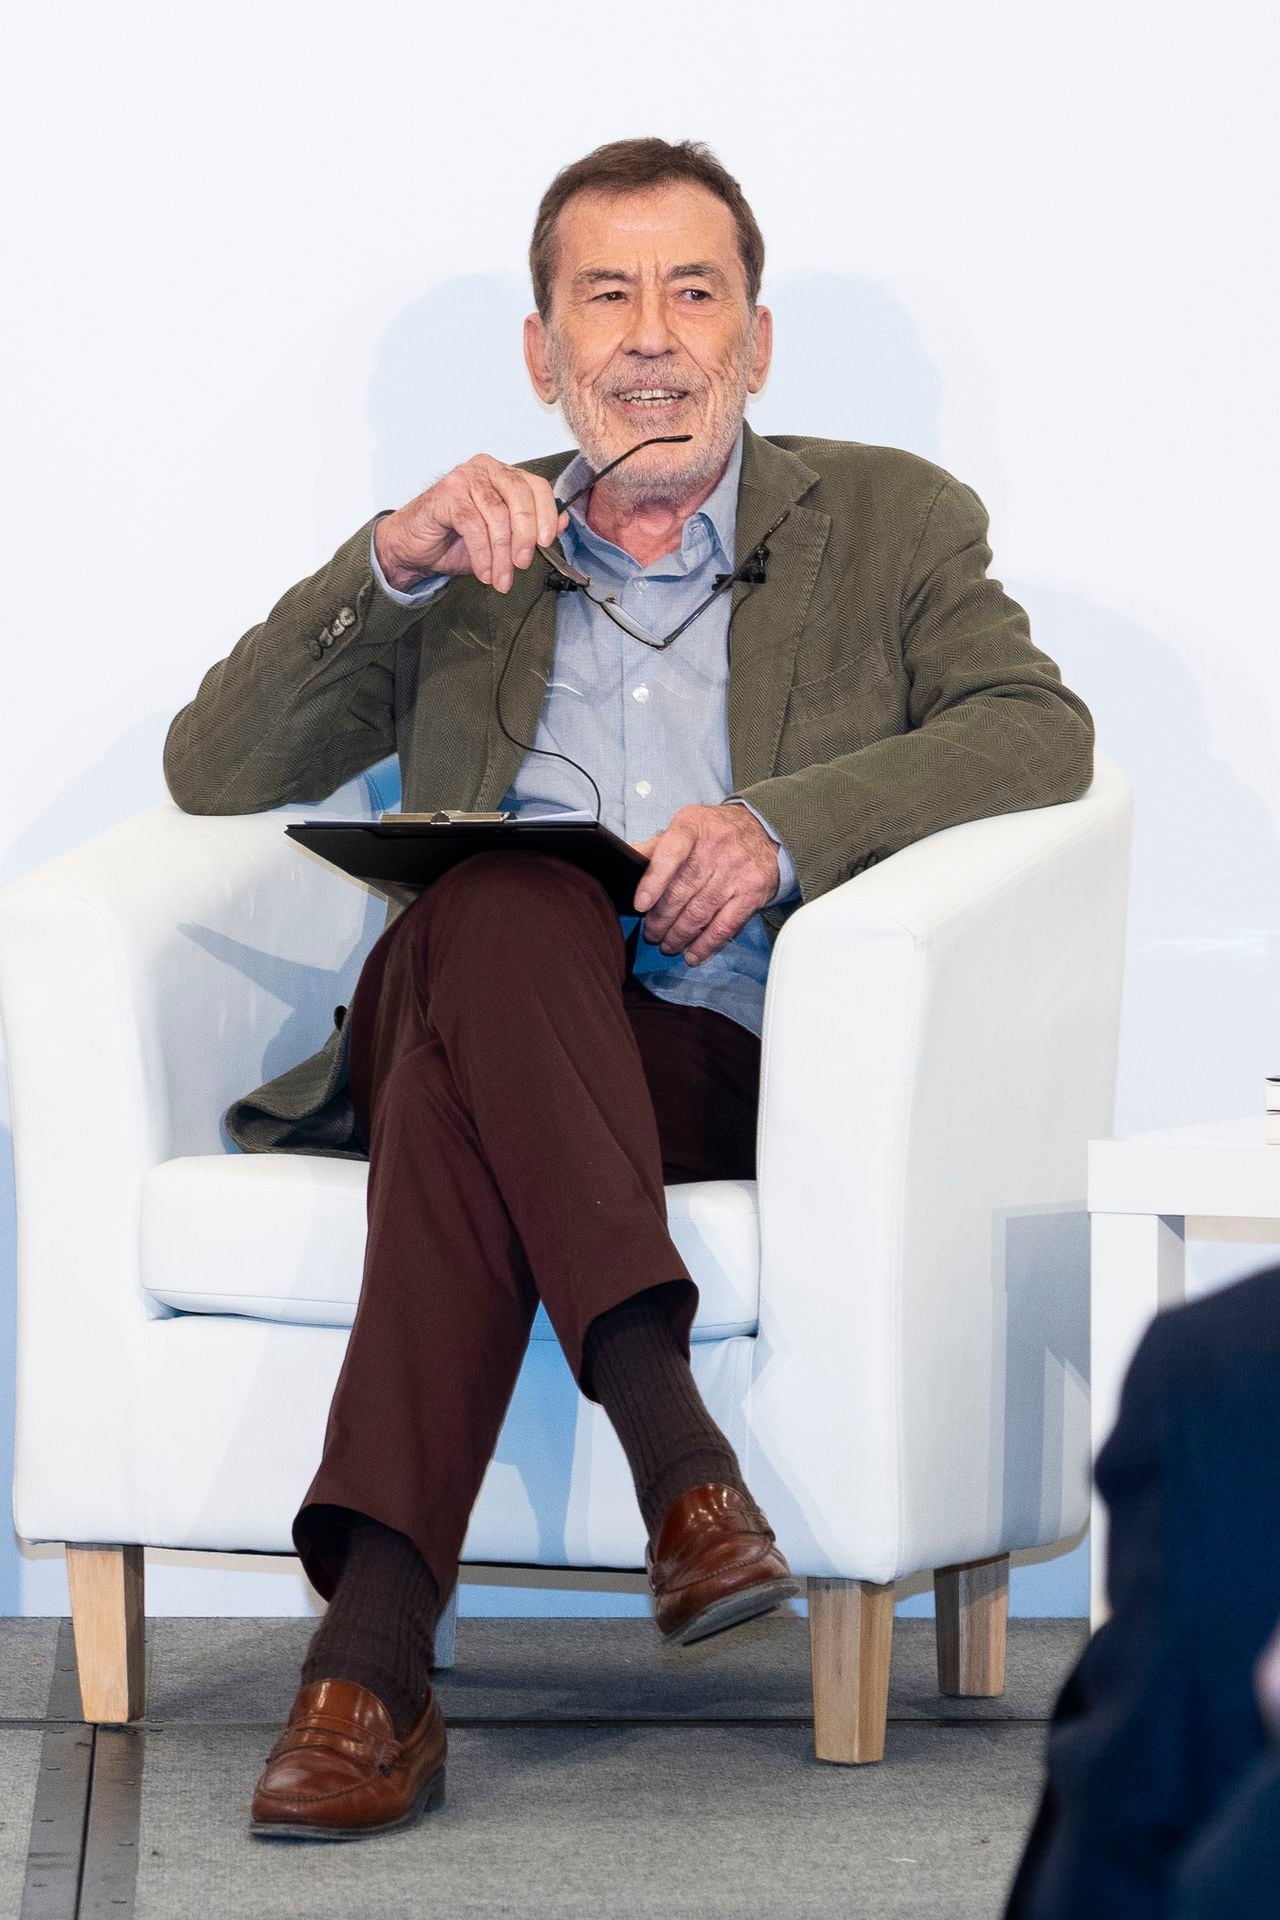 Fernando Sánchez Dragó asiste a la presentación del libro 'España Vertebrada' el 3 de abril de 2019 en Madrid, España. (Foto de Oscar González/NurPhoto vía Getty Images)